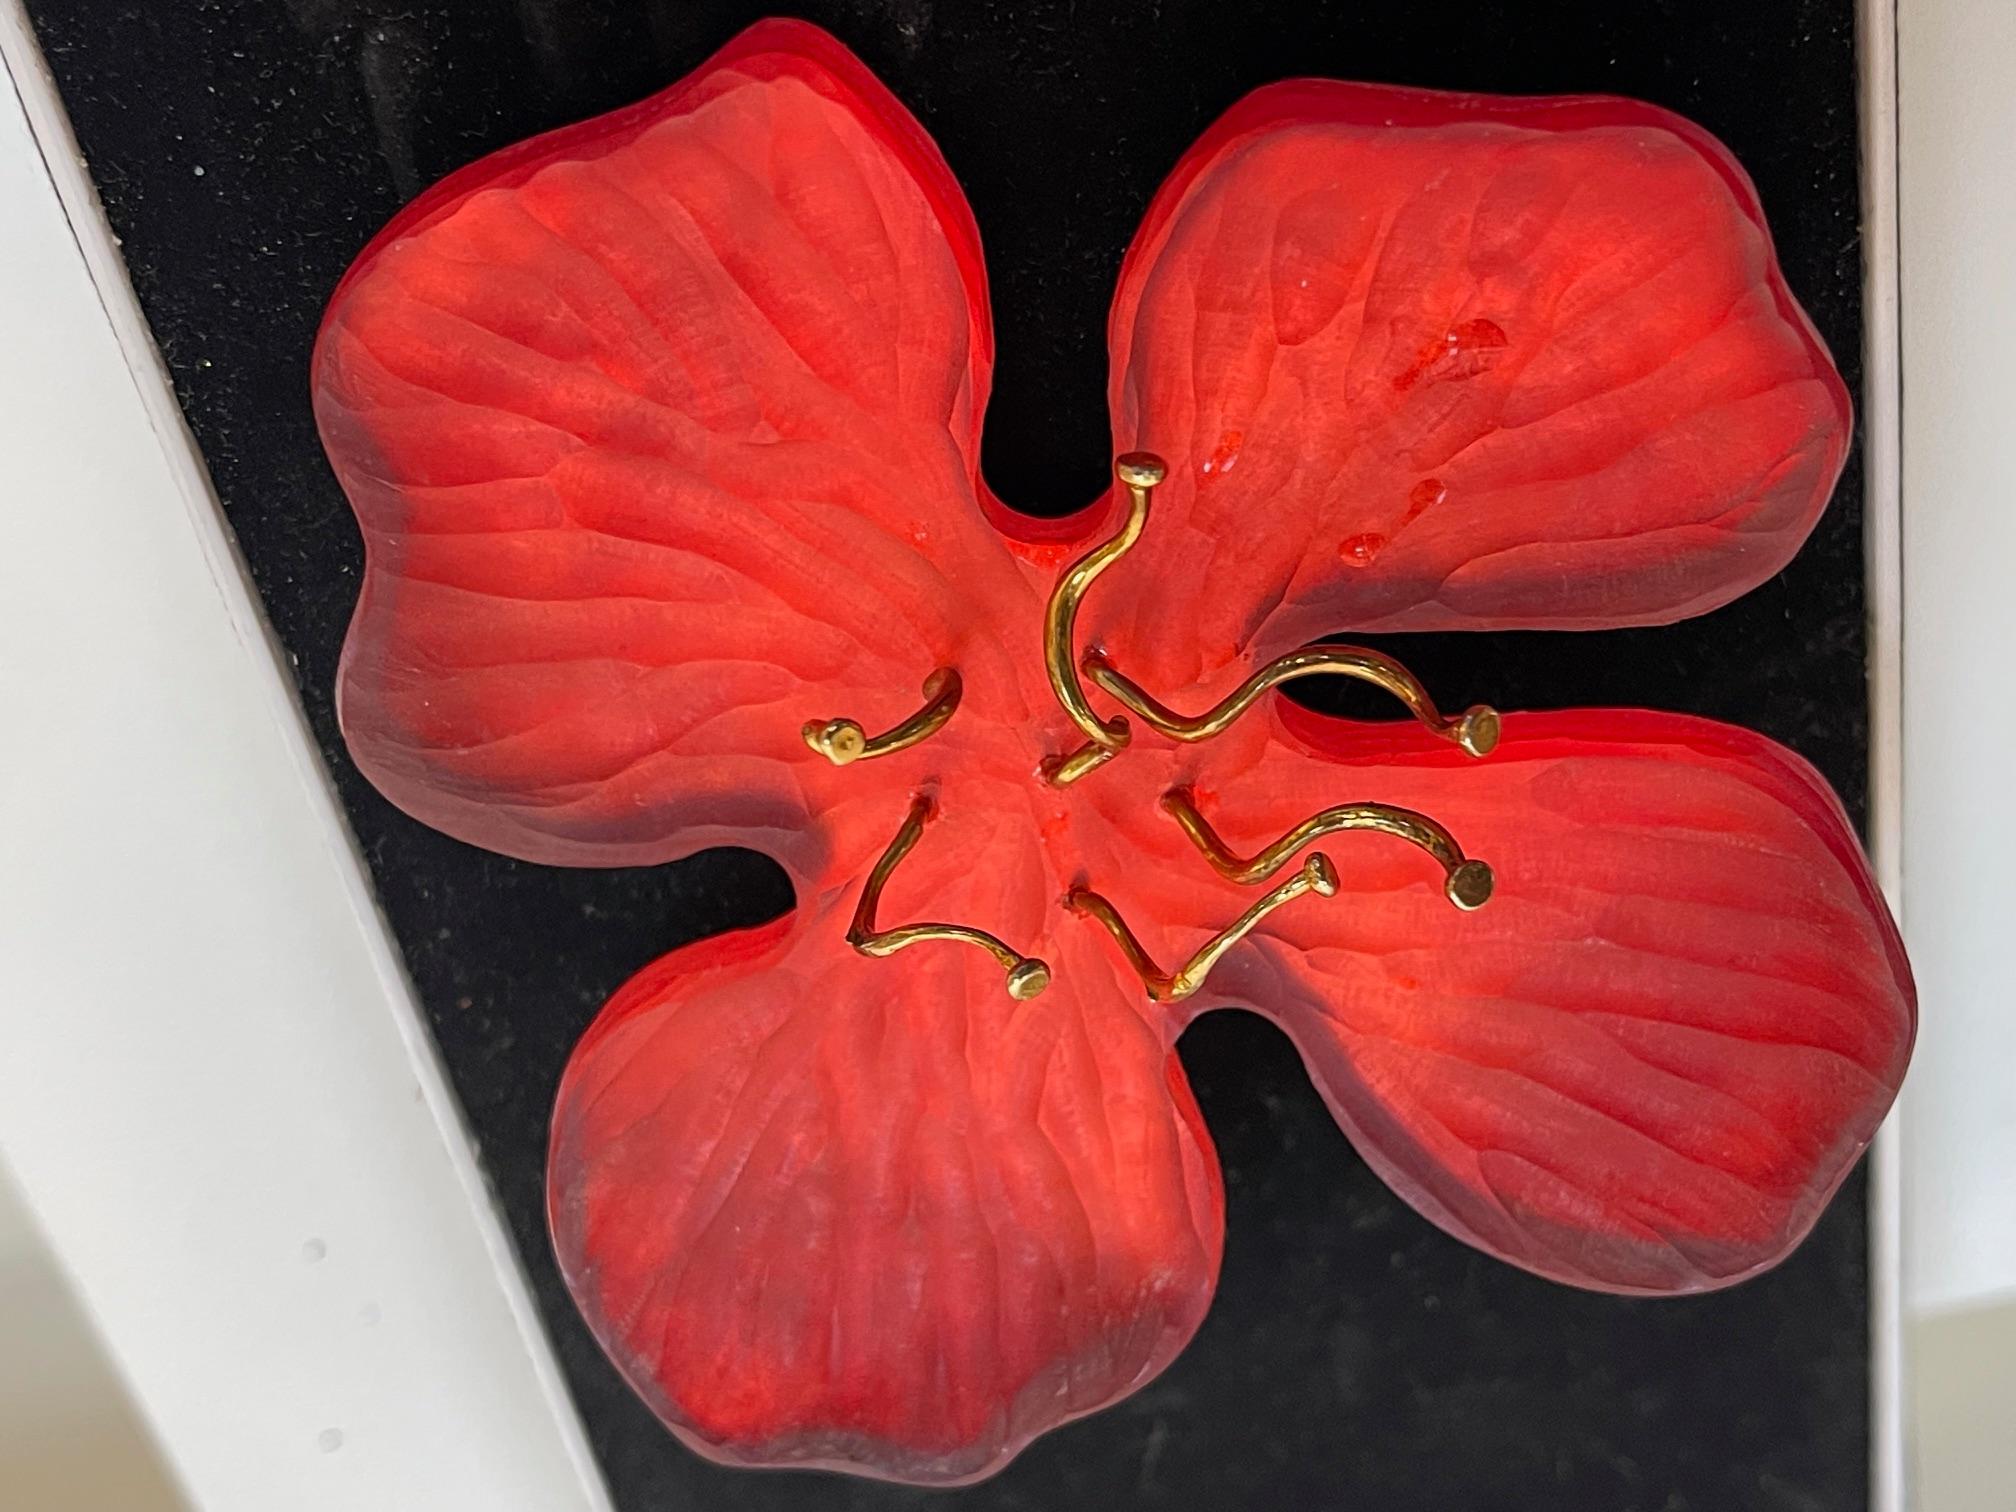 Tout simplement magnifique ! Oscar Vintage Hand-crafted Alexis Bittar Designer Signed Large Red Orange Flower Centering Gold plated Stamen. Marqué au dos : FAIT À LA MAIN PAR ALEXIS BITTAR. L'épingle mesure environ 3,25